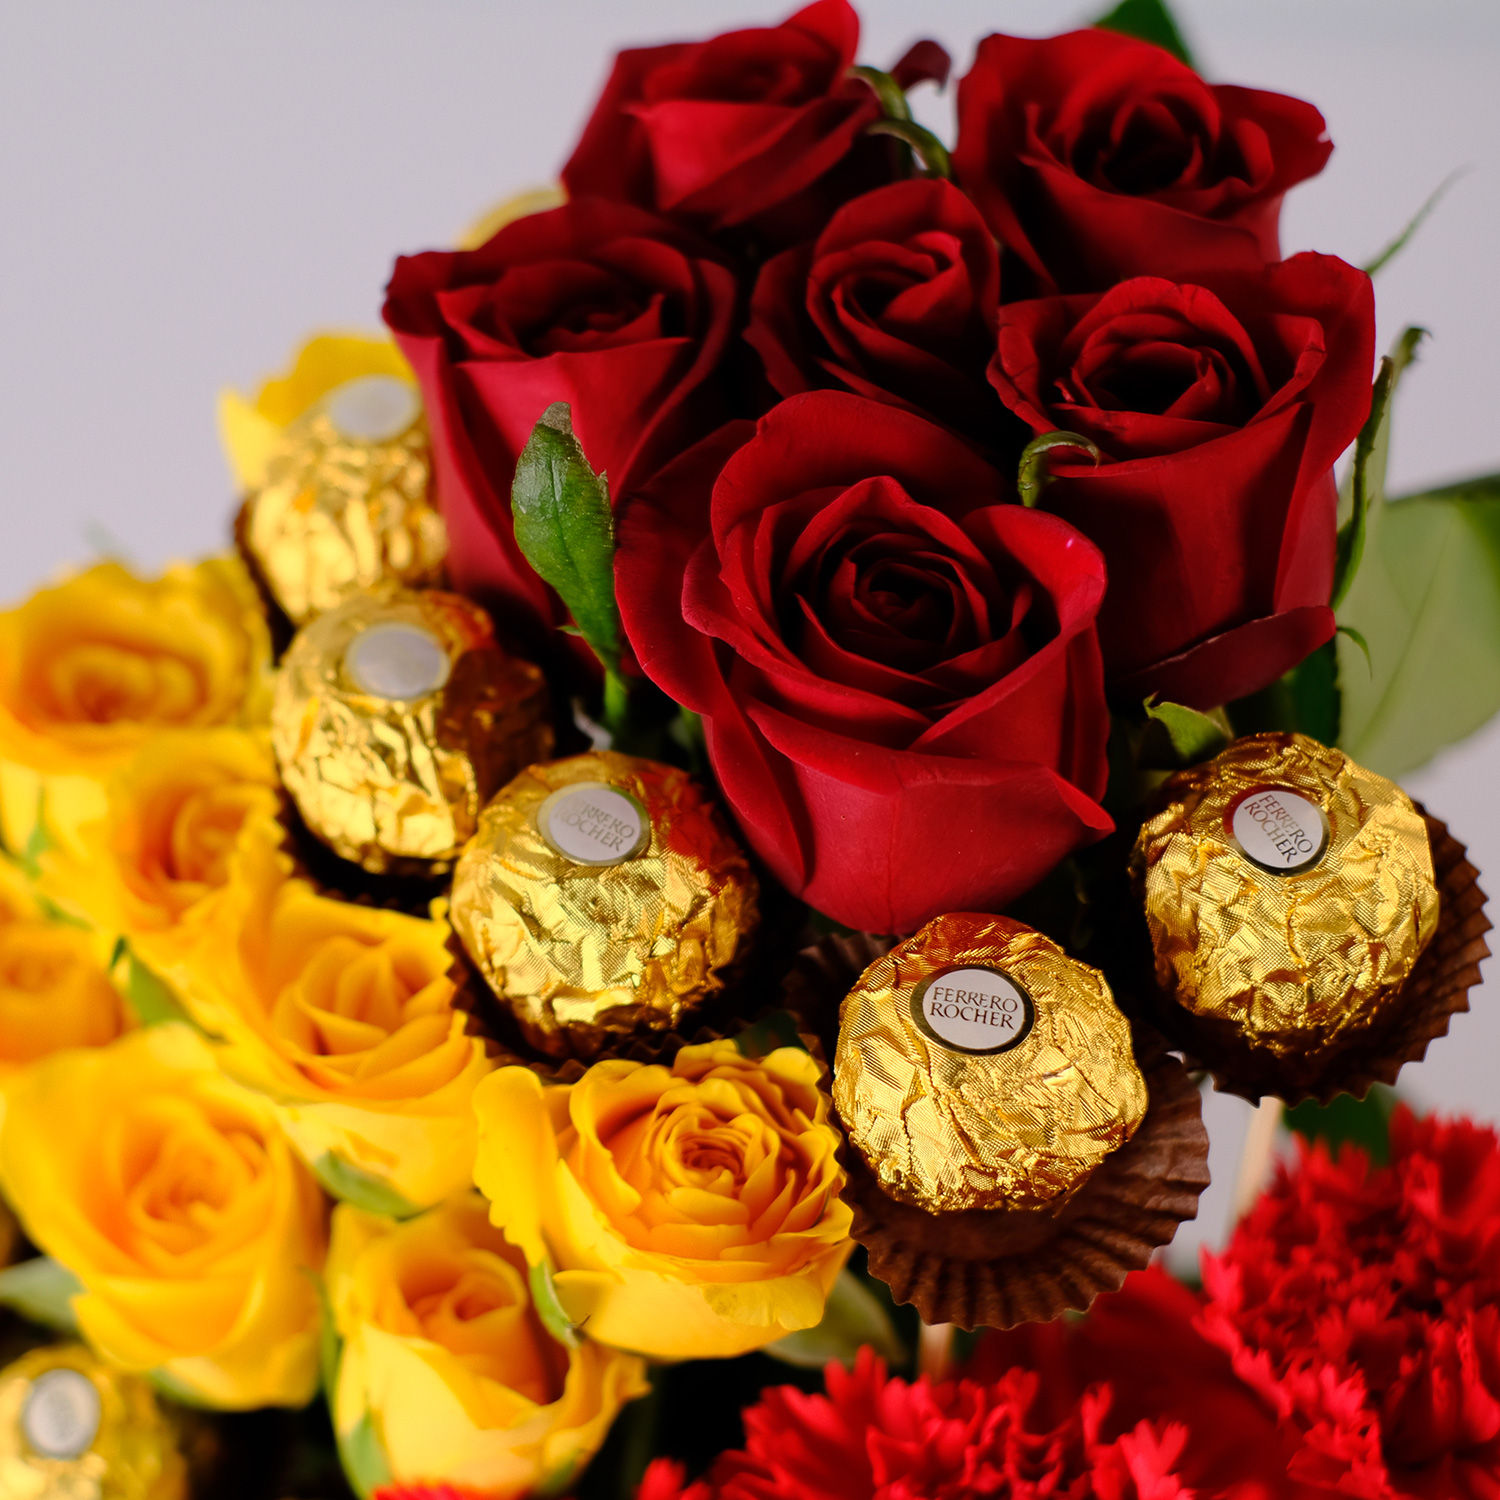 Buy/Send Mixed Flowers & Ferrero Rocher Arrangement Online- FNP